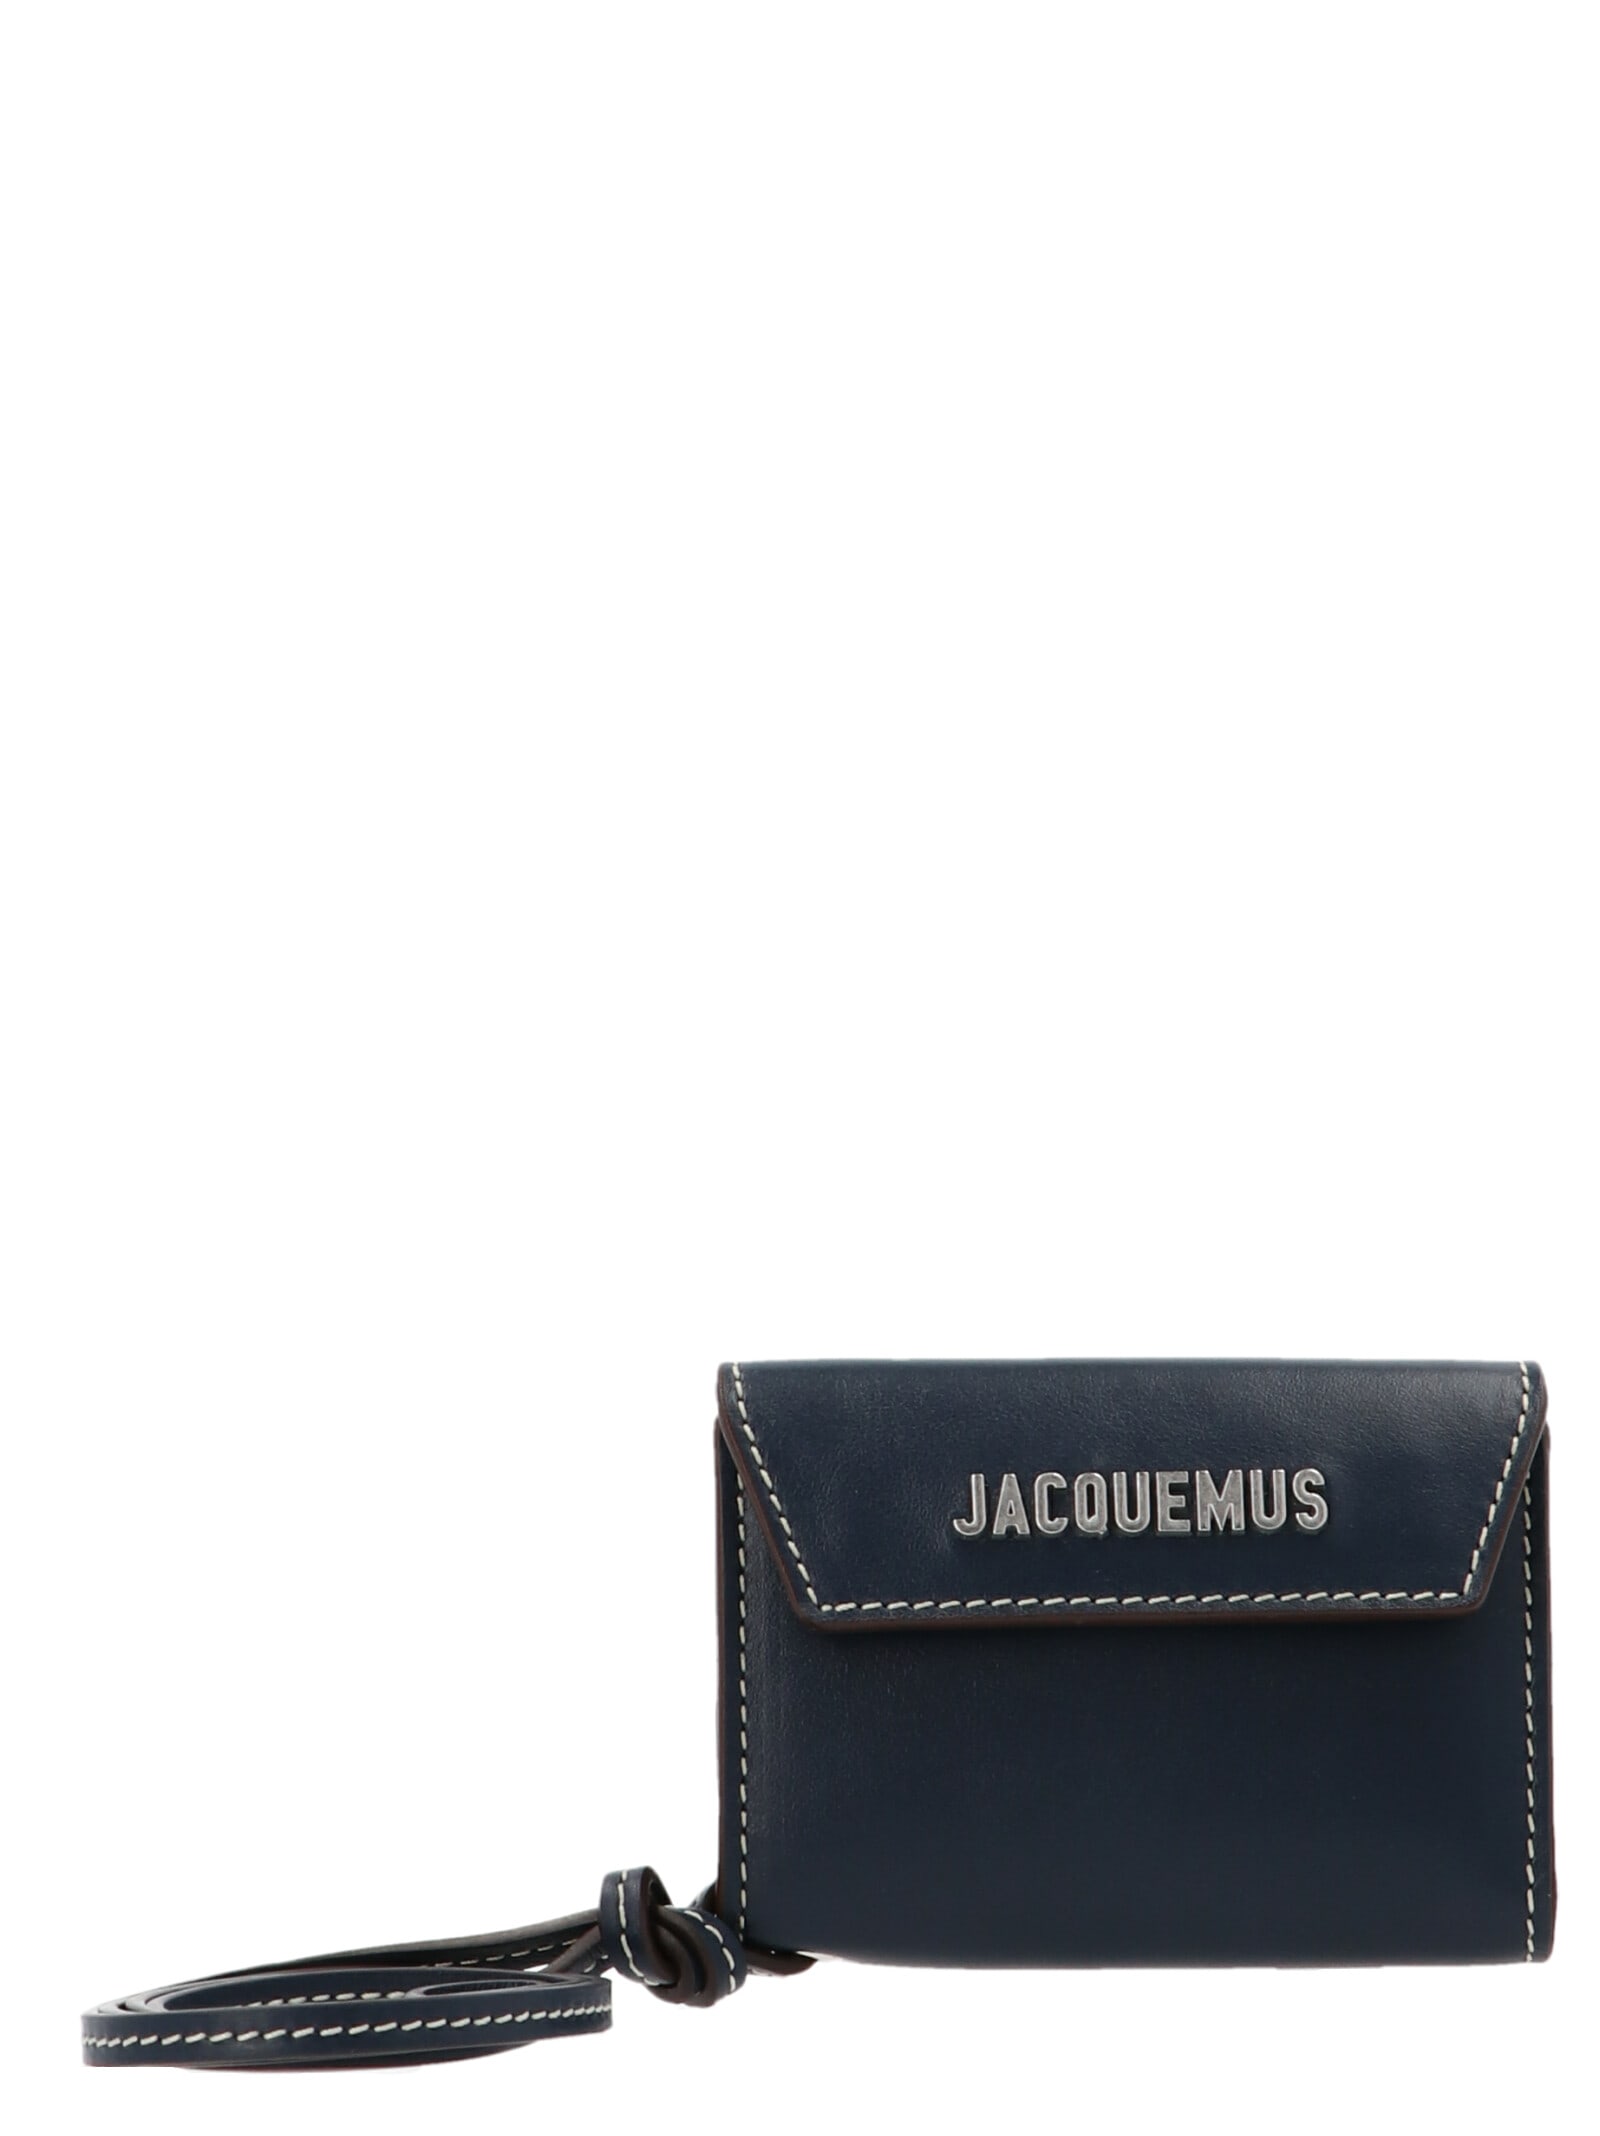 Jacquemus le Porte Jacquemus Wallet